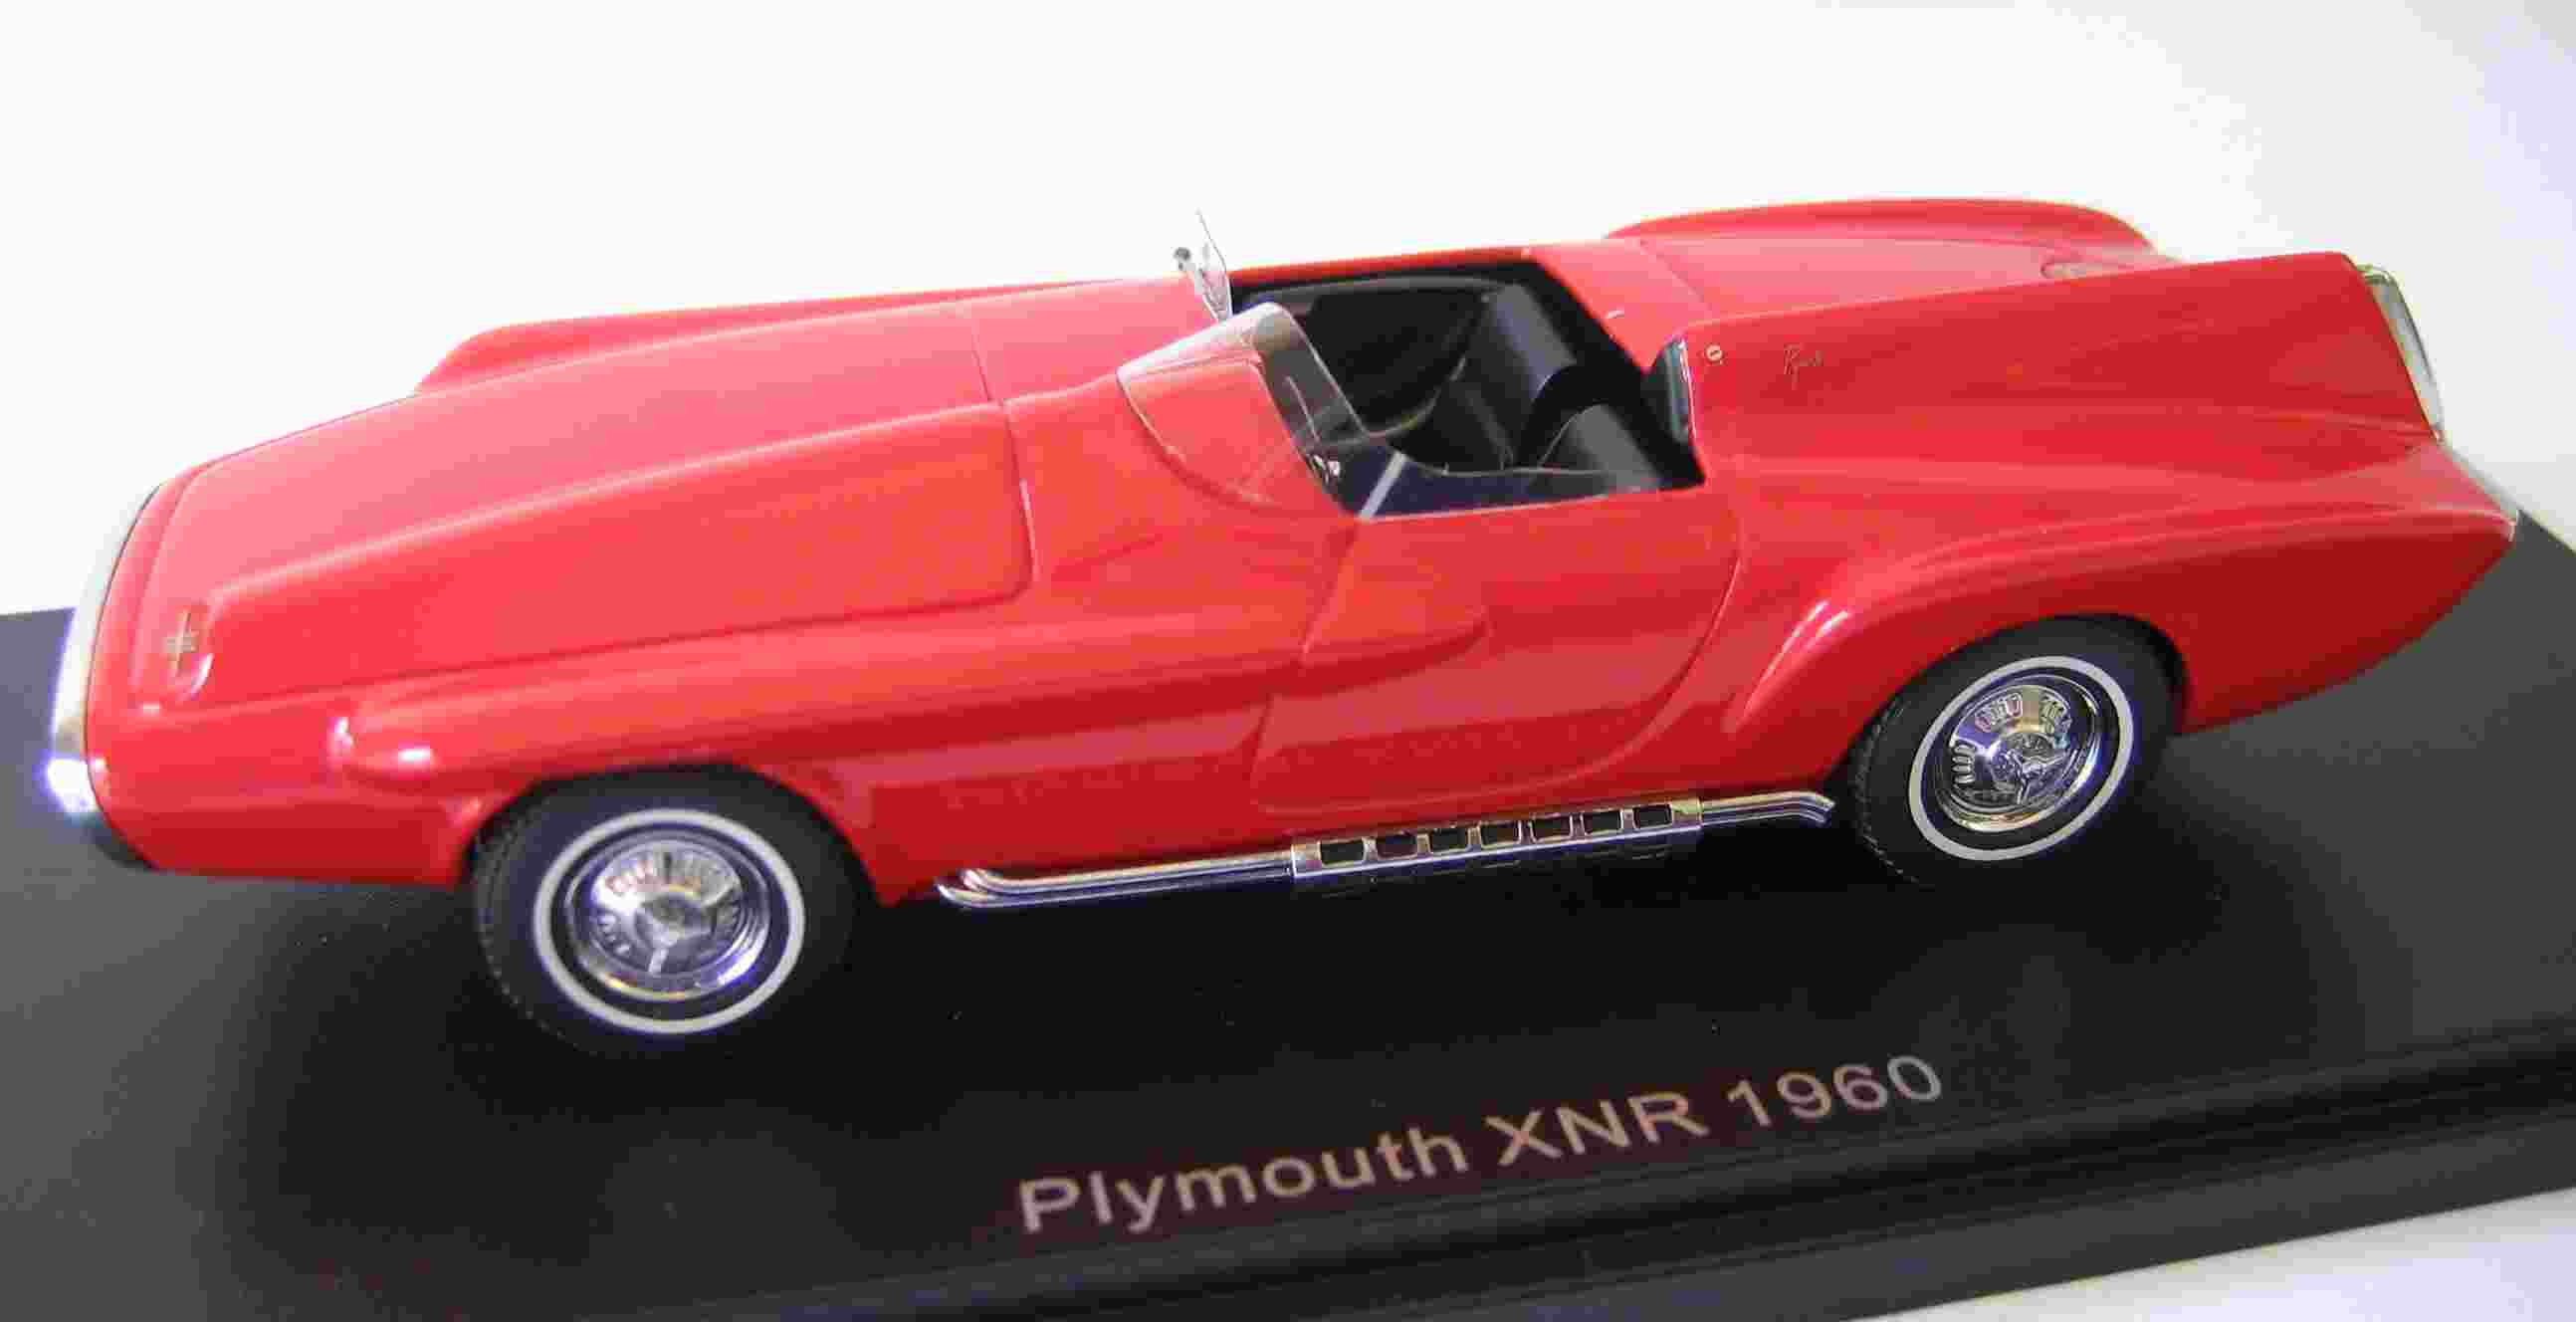 Plymouth XNR